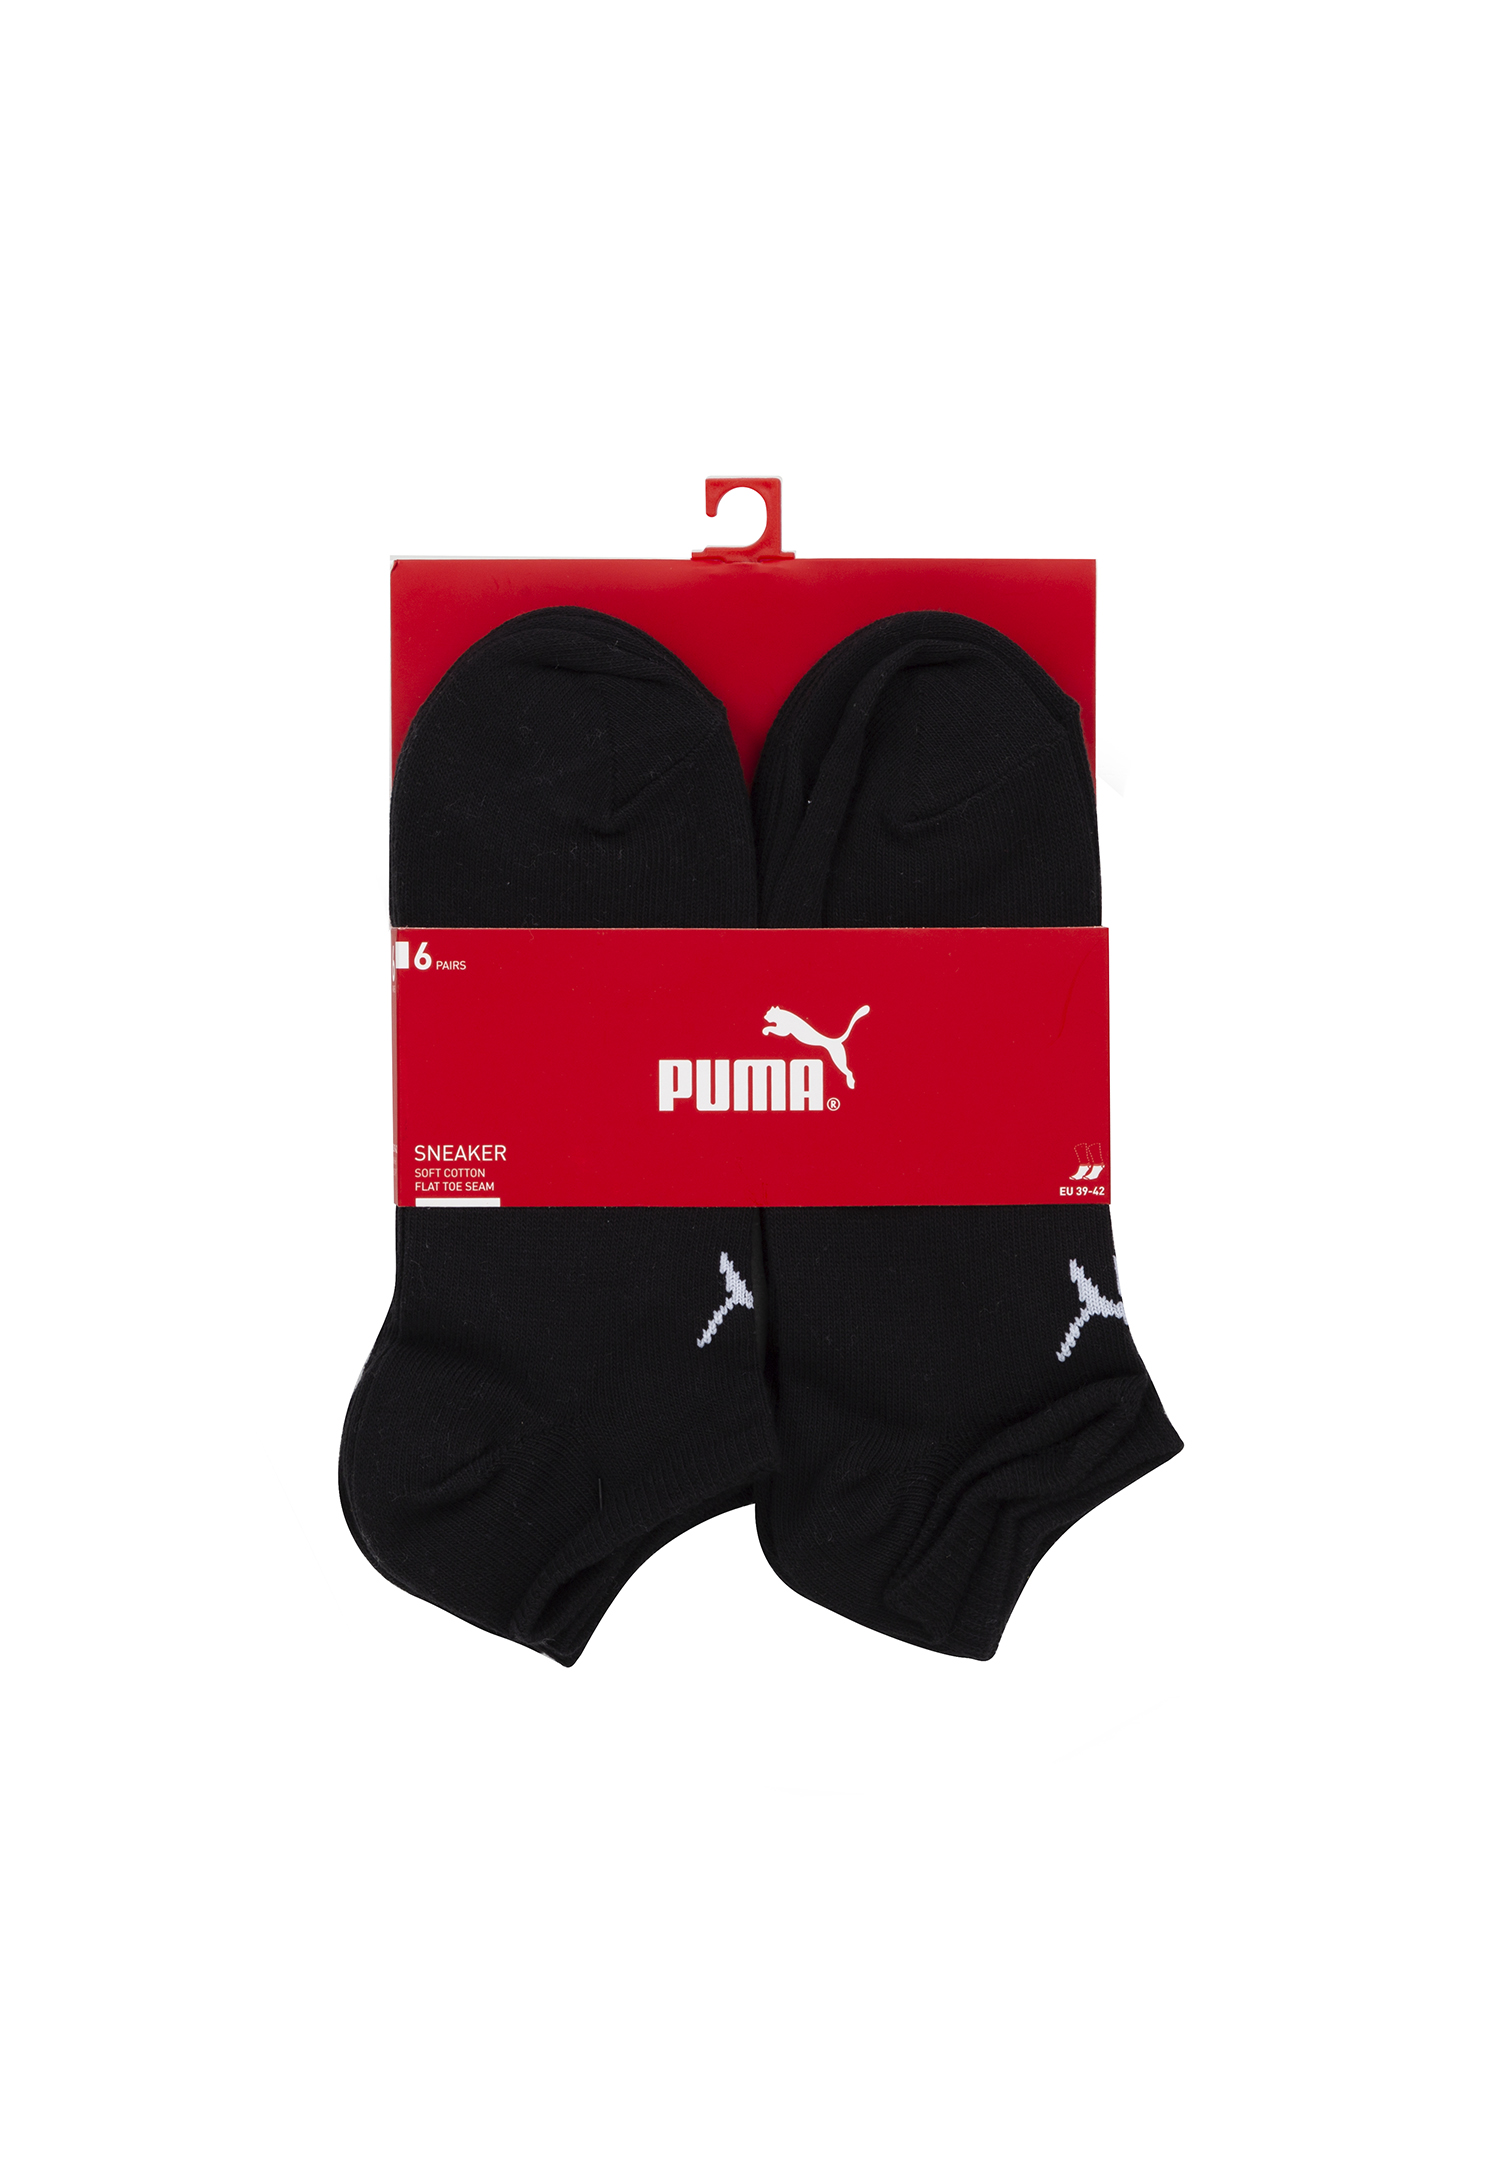 Puma Unisex Sneaker Socken knöchelhoch für Damen Herren 18er Pack